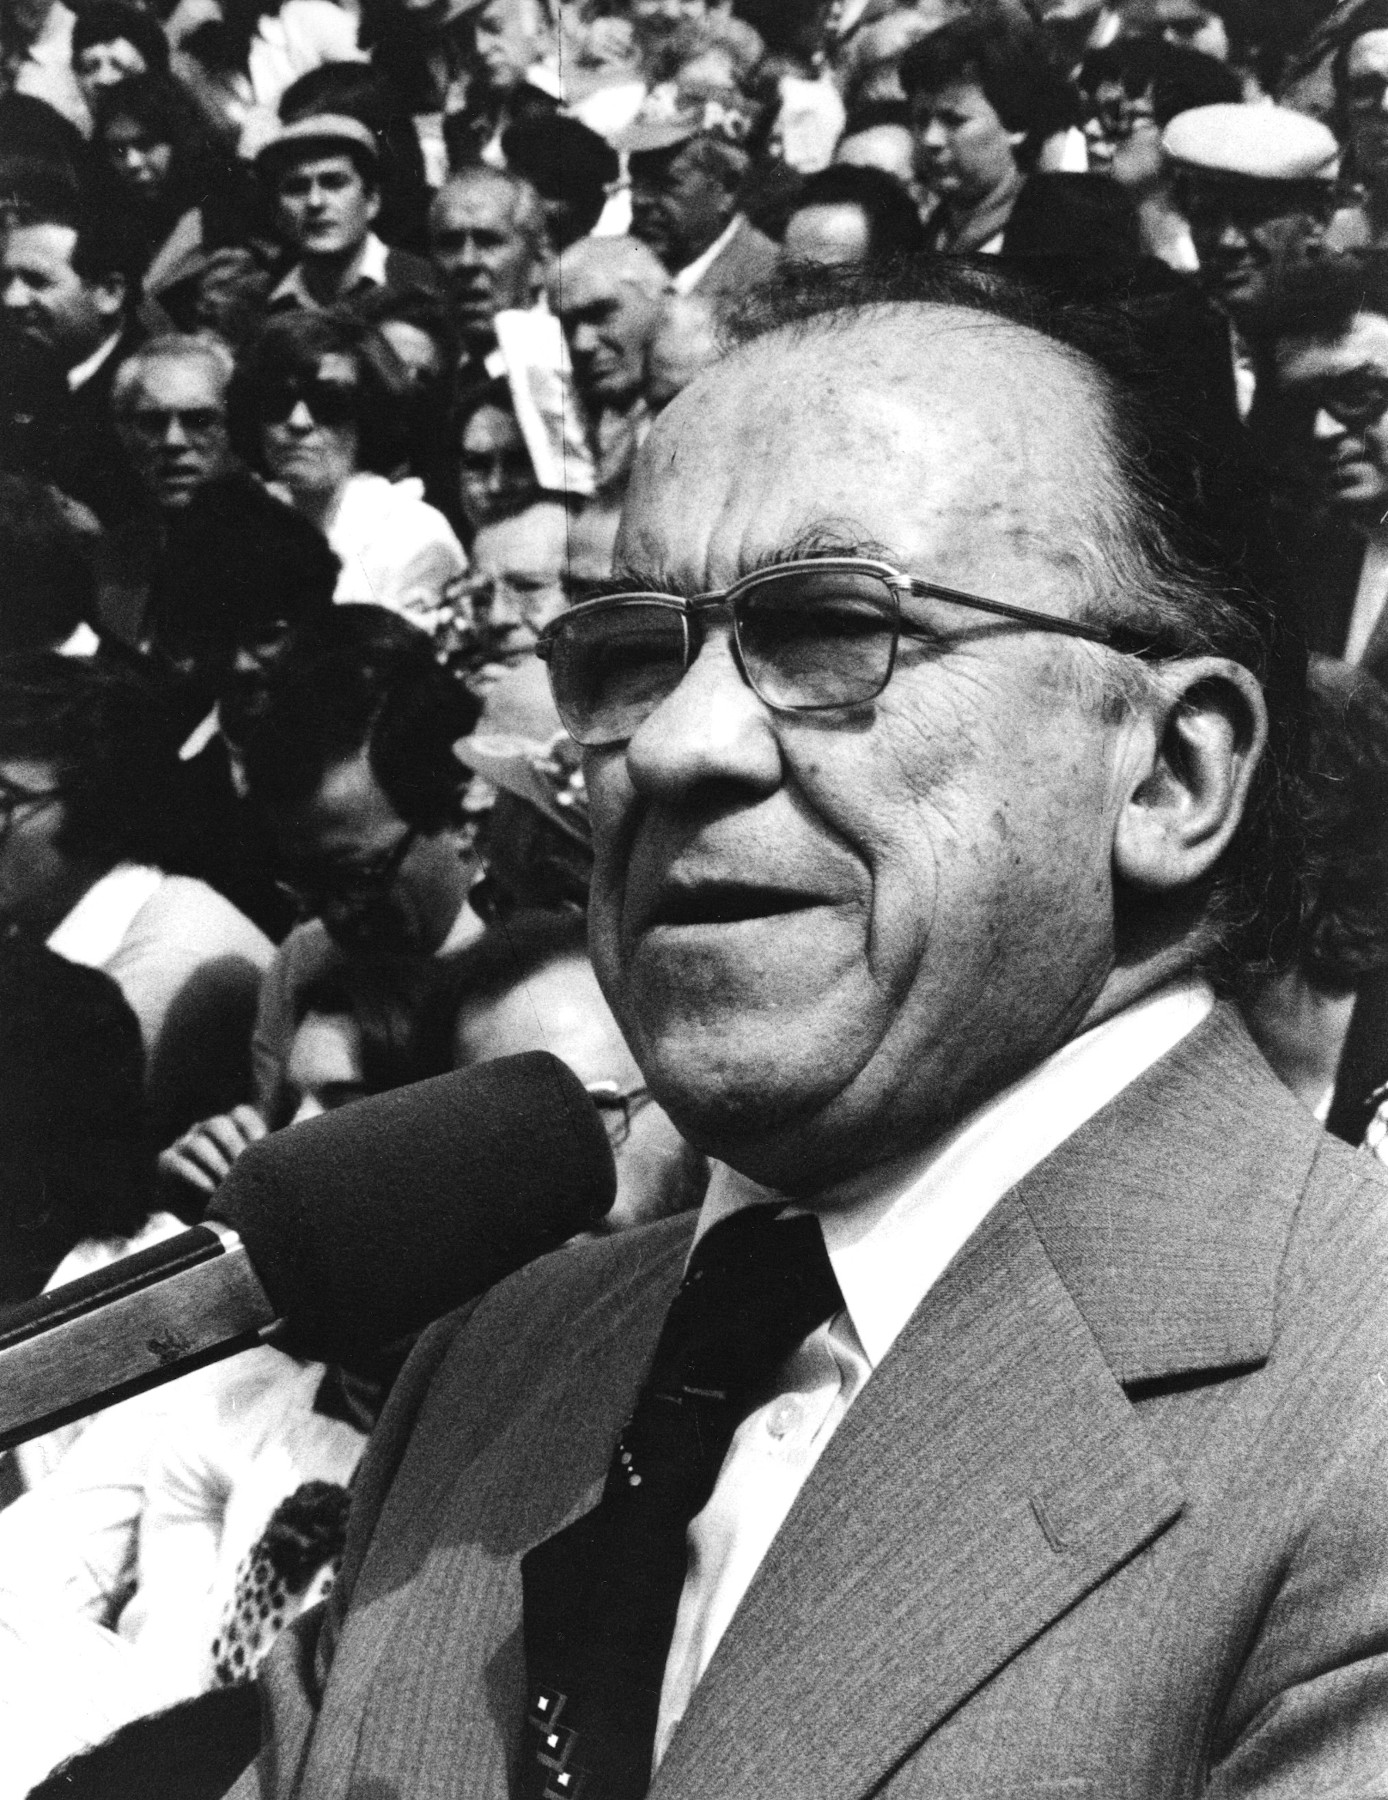 Santiago Carrillo durante la campaña electoral de las elecciones generales de 1979 (mitin en la plaza de toros de Gijón. Asturias). Wikipedia.